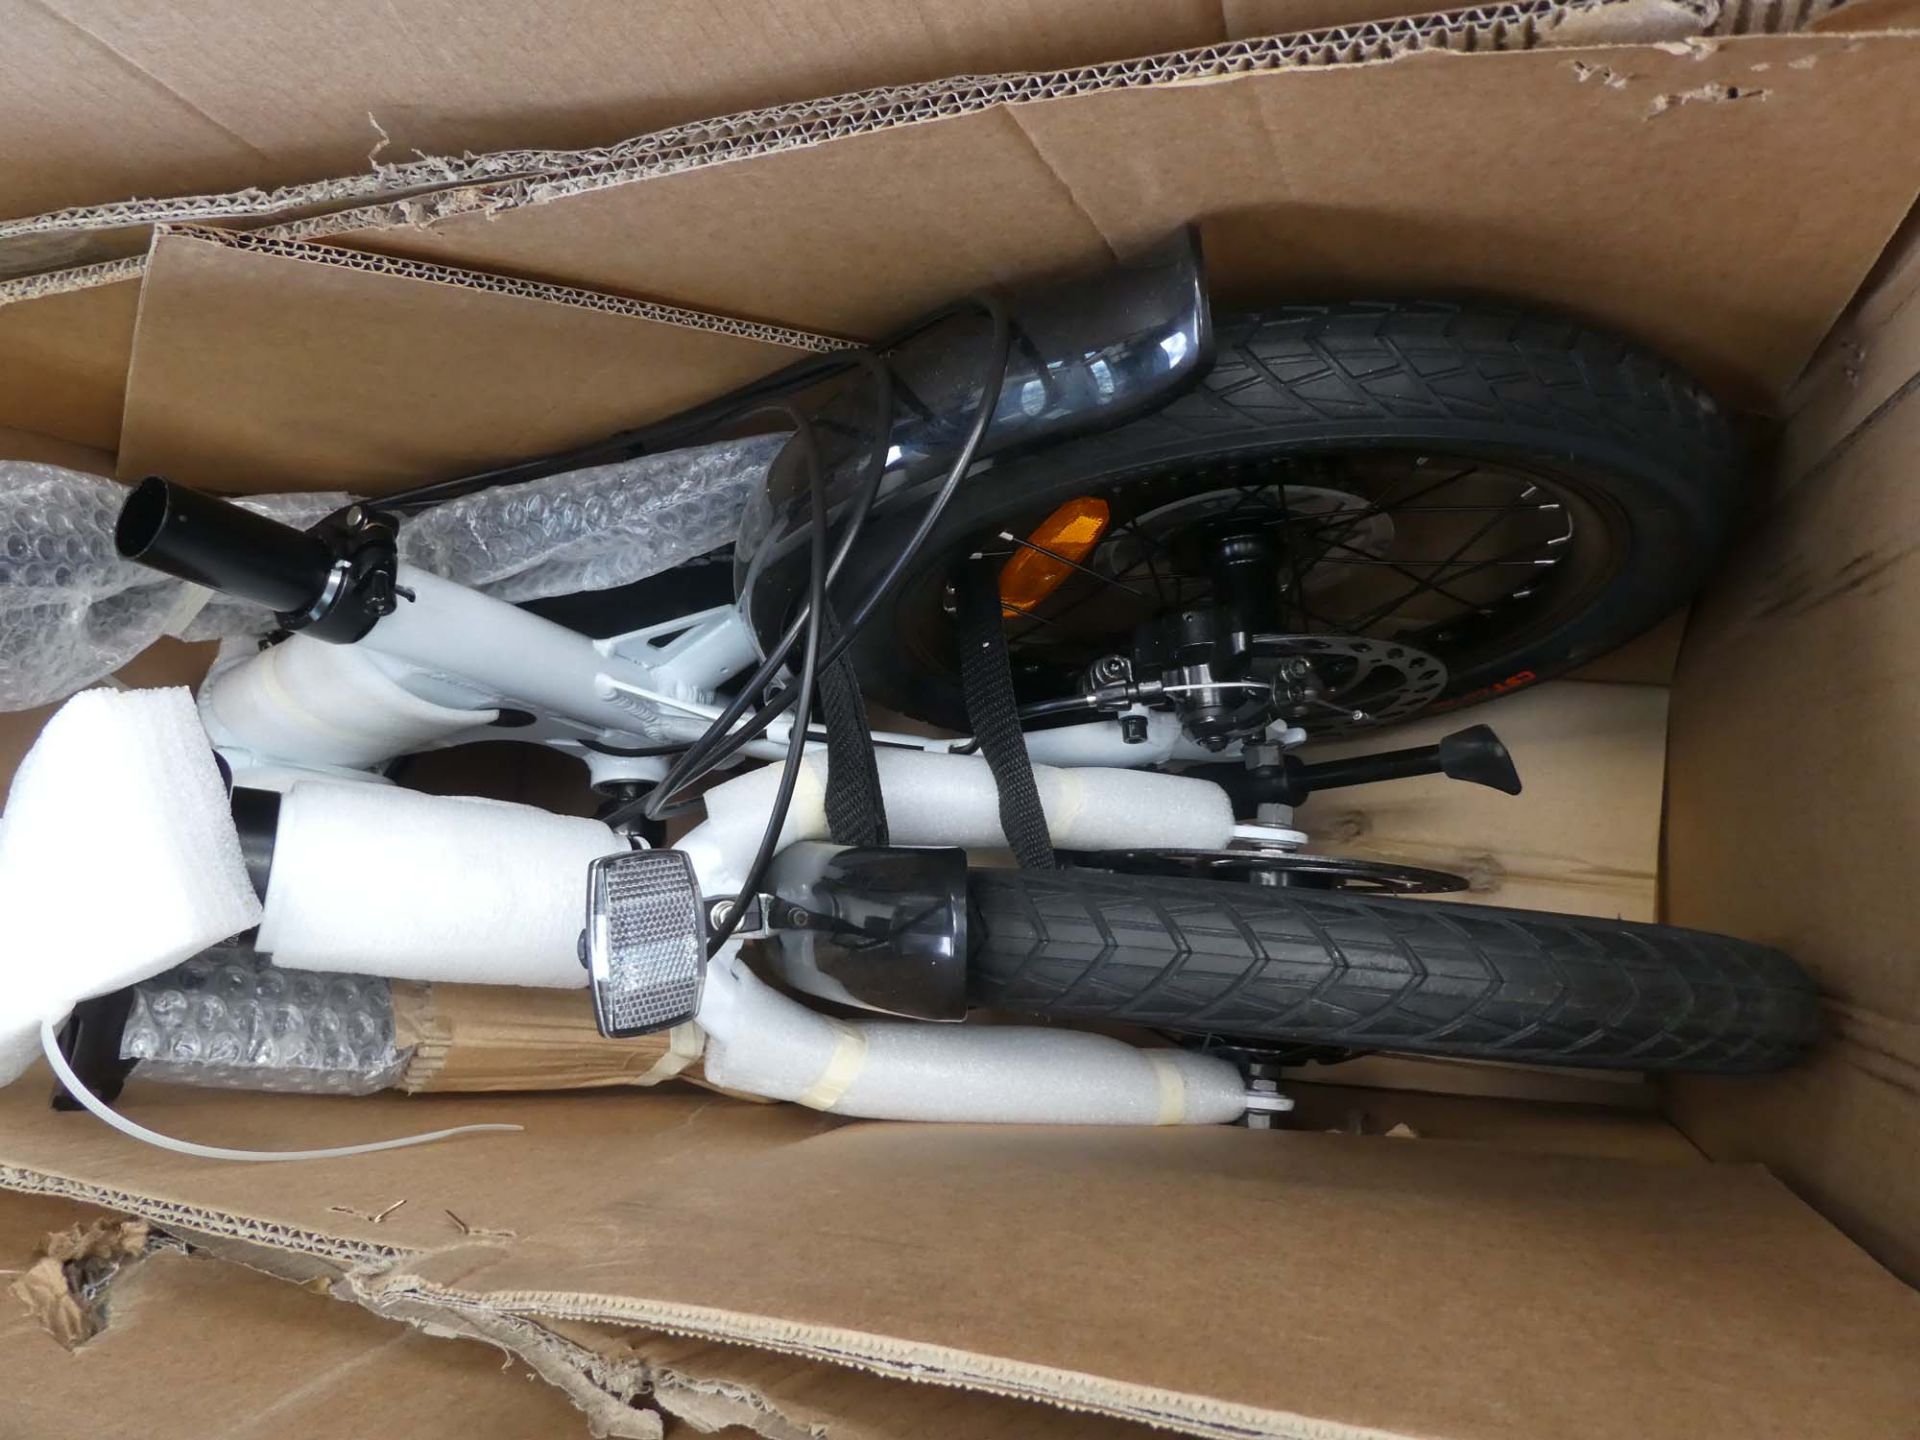 Boxed fold up bike - Image 2 of 2